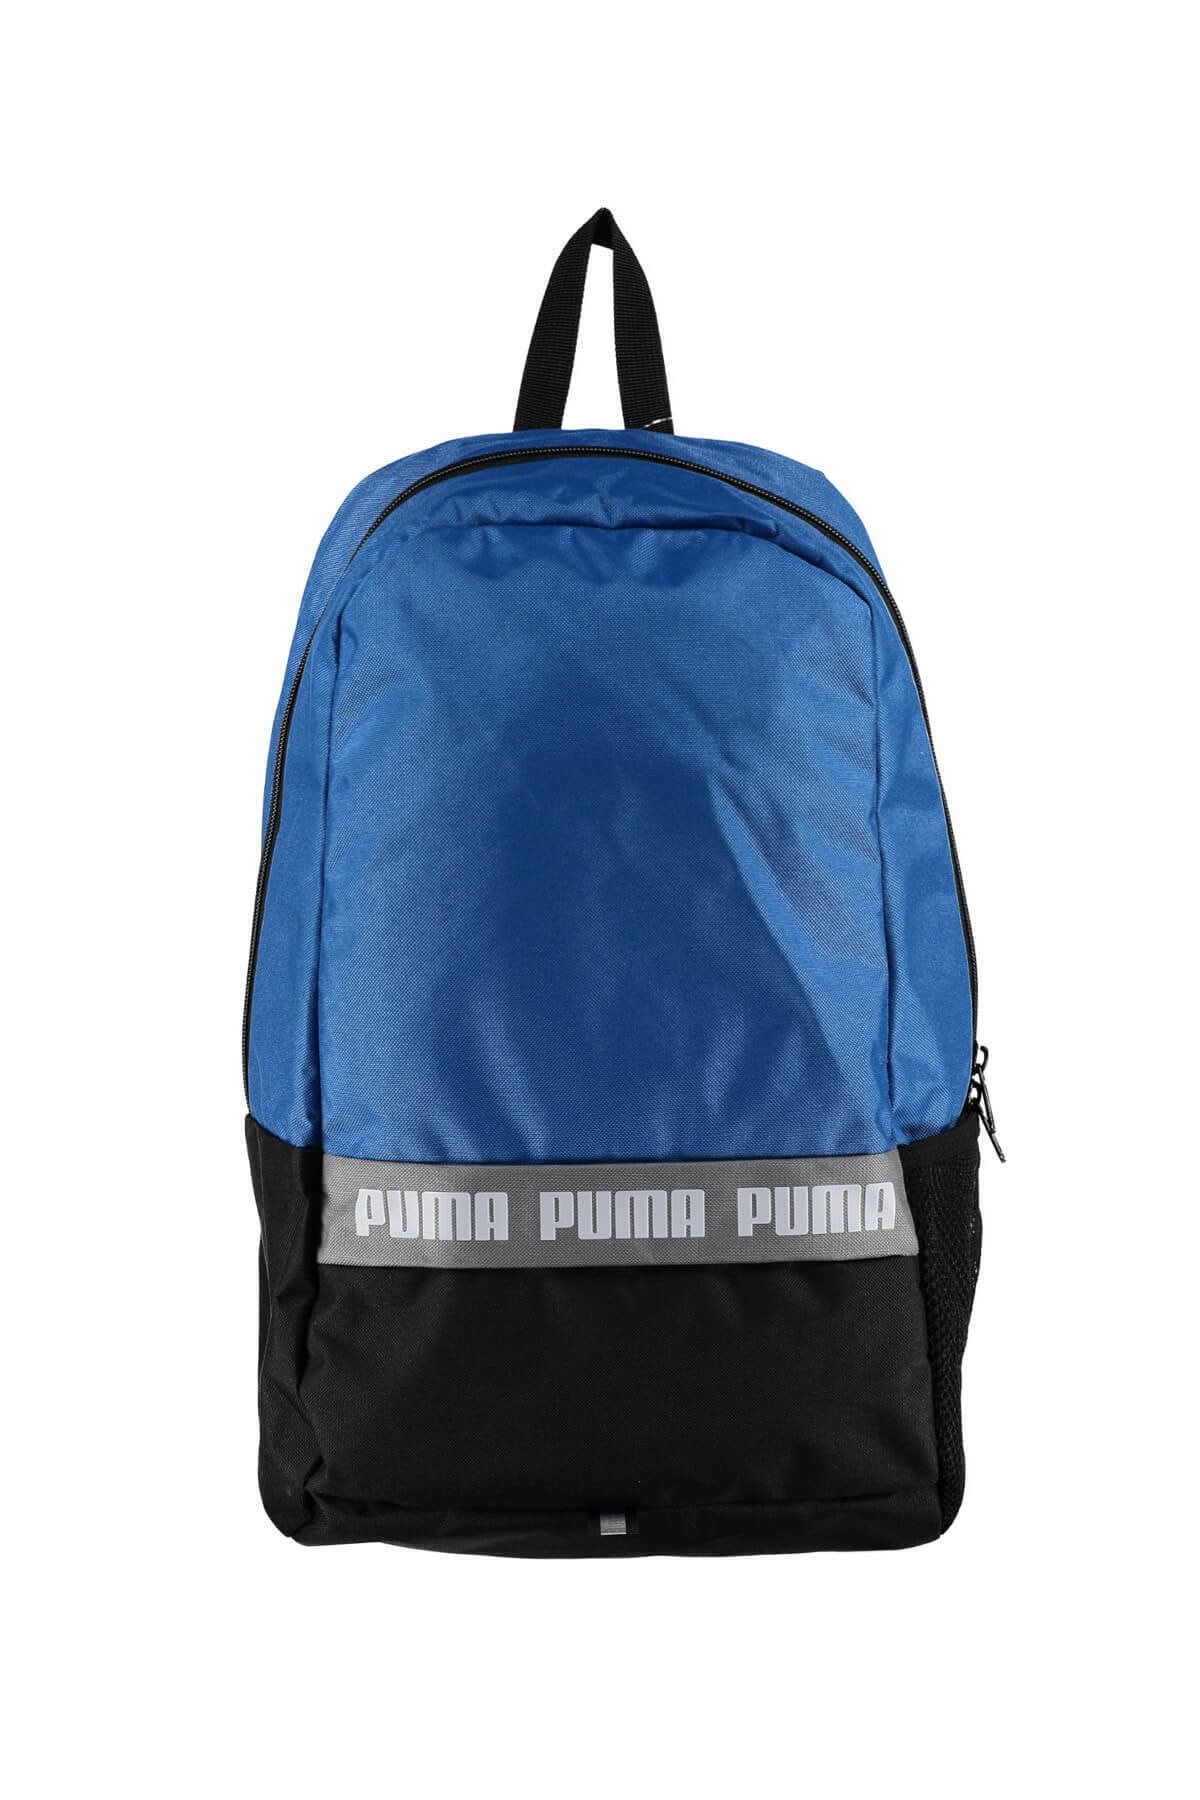 Puma Unisex Sırt Çantası - 7510602 Phase Backpack Ii - 7510602